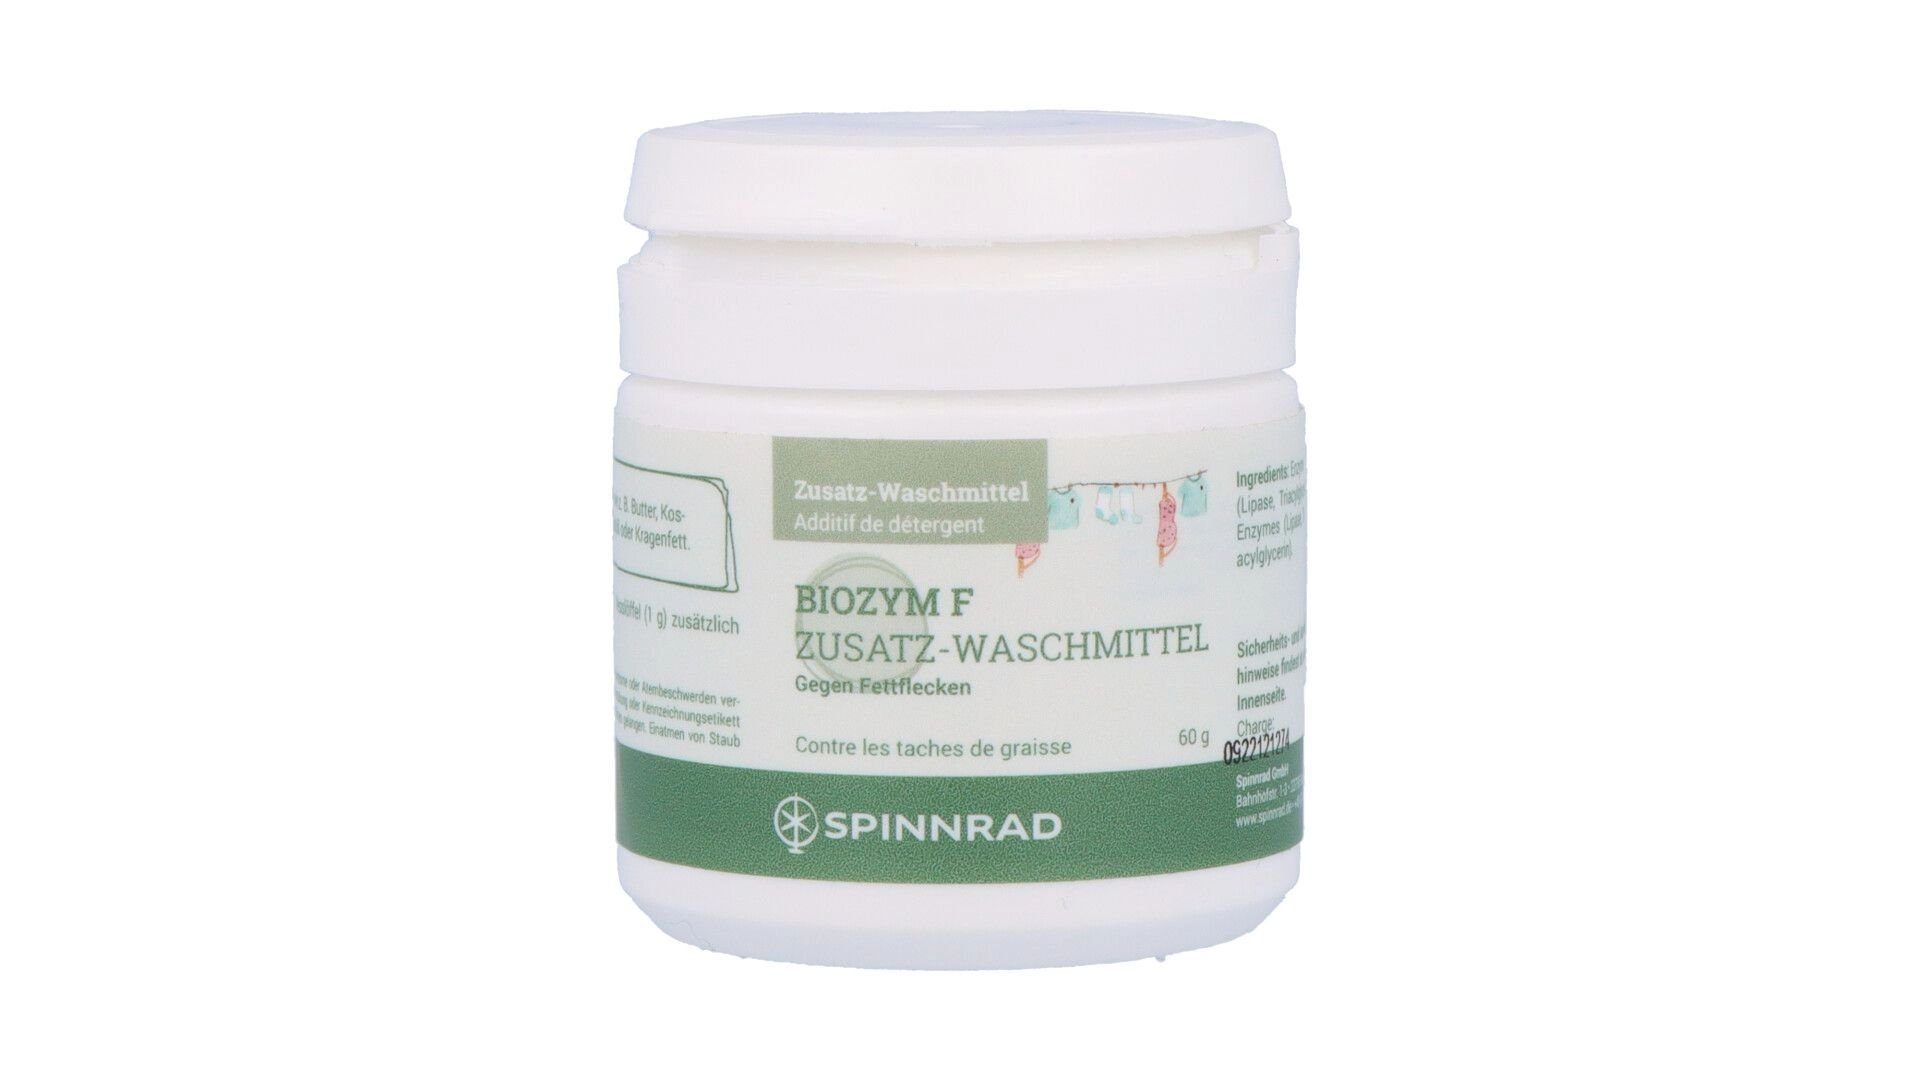 Spinnrad GmbH Biozym F - Waschenzymzusatz gegen Fettflecken 60 g Spezialwaschmittel